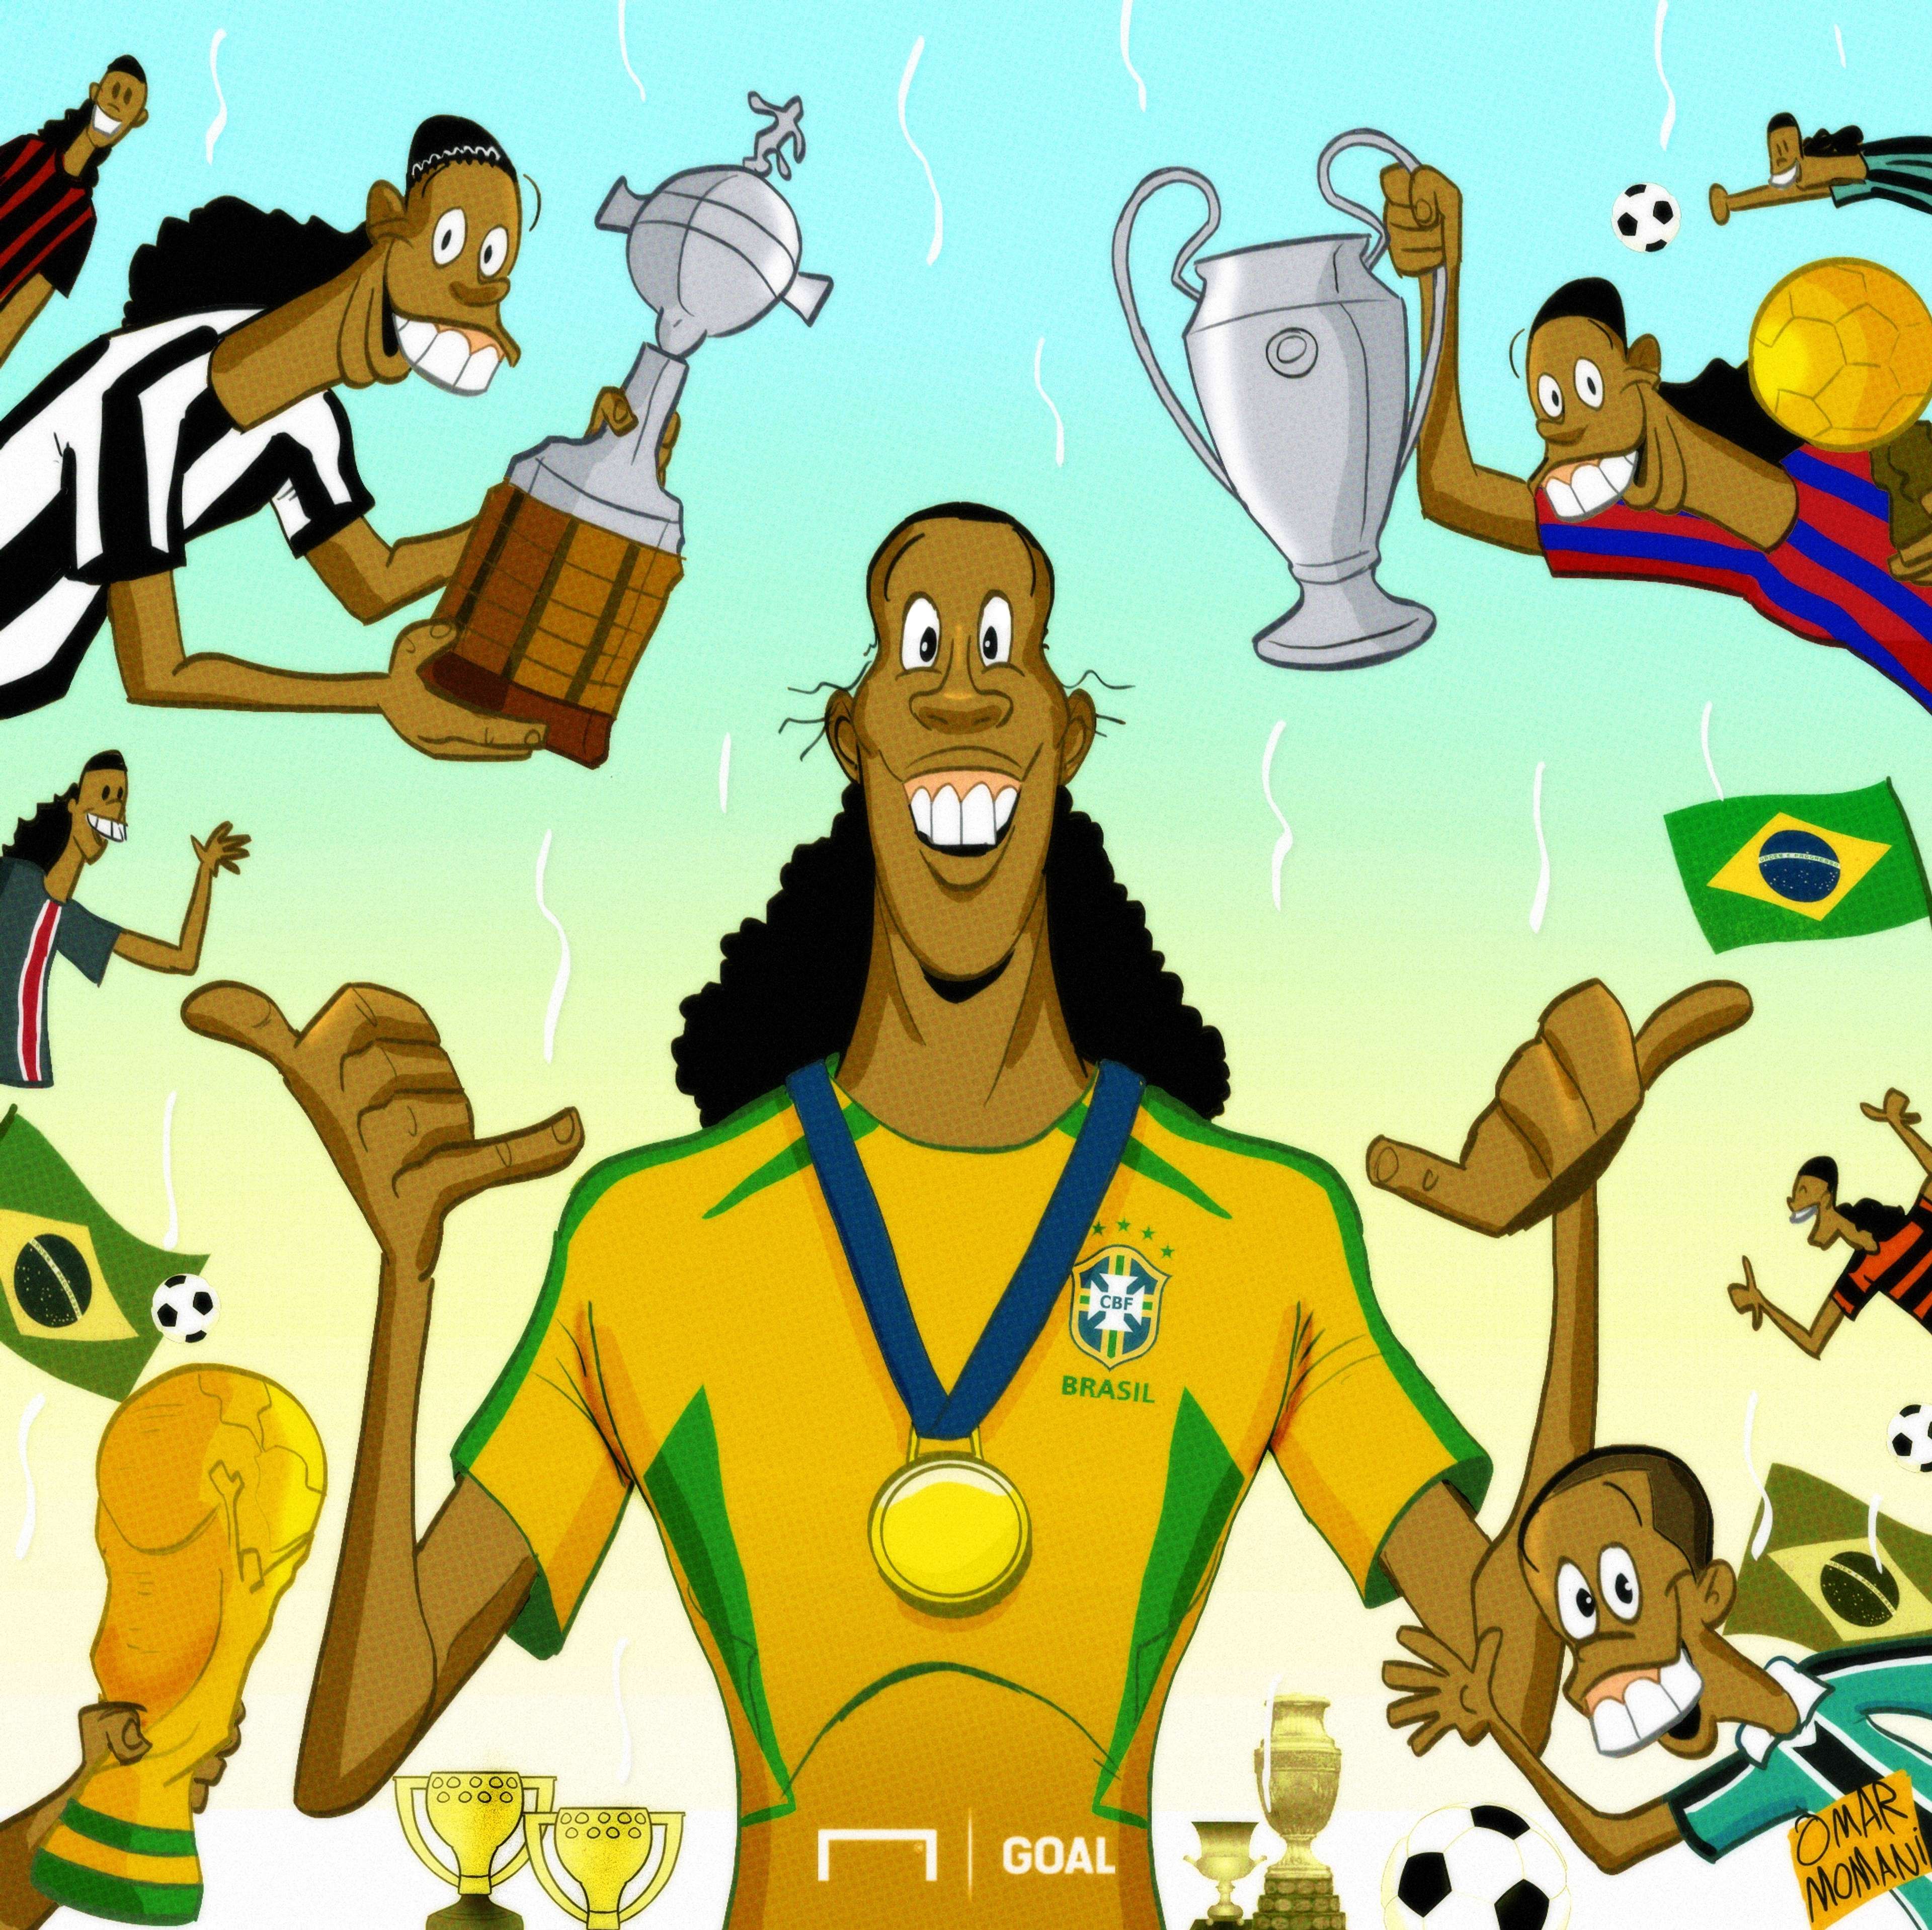 Ronaldinho retires